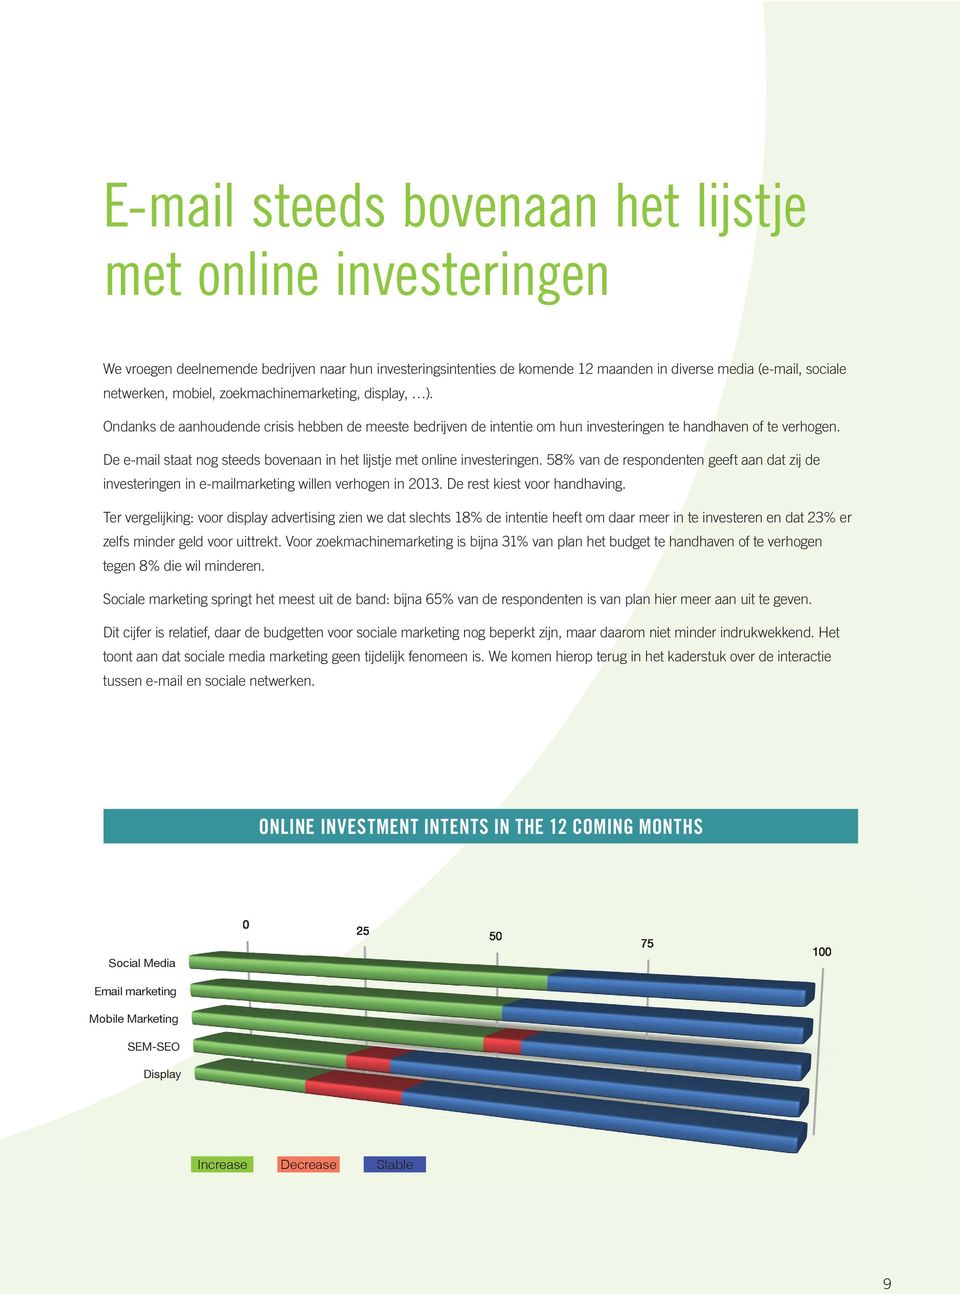 De e-mail staat nog steeds bovenaan in het lijstje met online investeringen. 58% van de respondenten geeft aan dat zij de investeringen in e-mailmarketing willen verhogen in 2013.